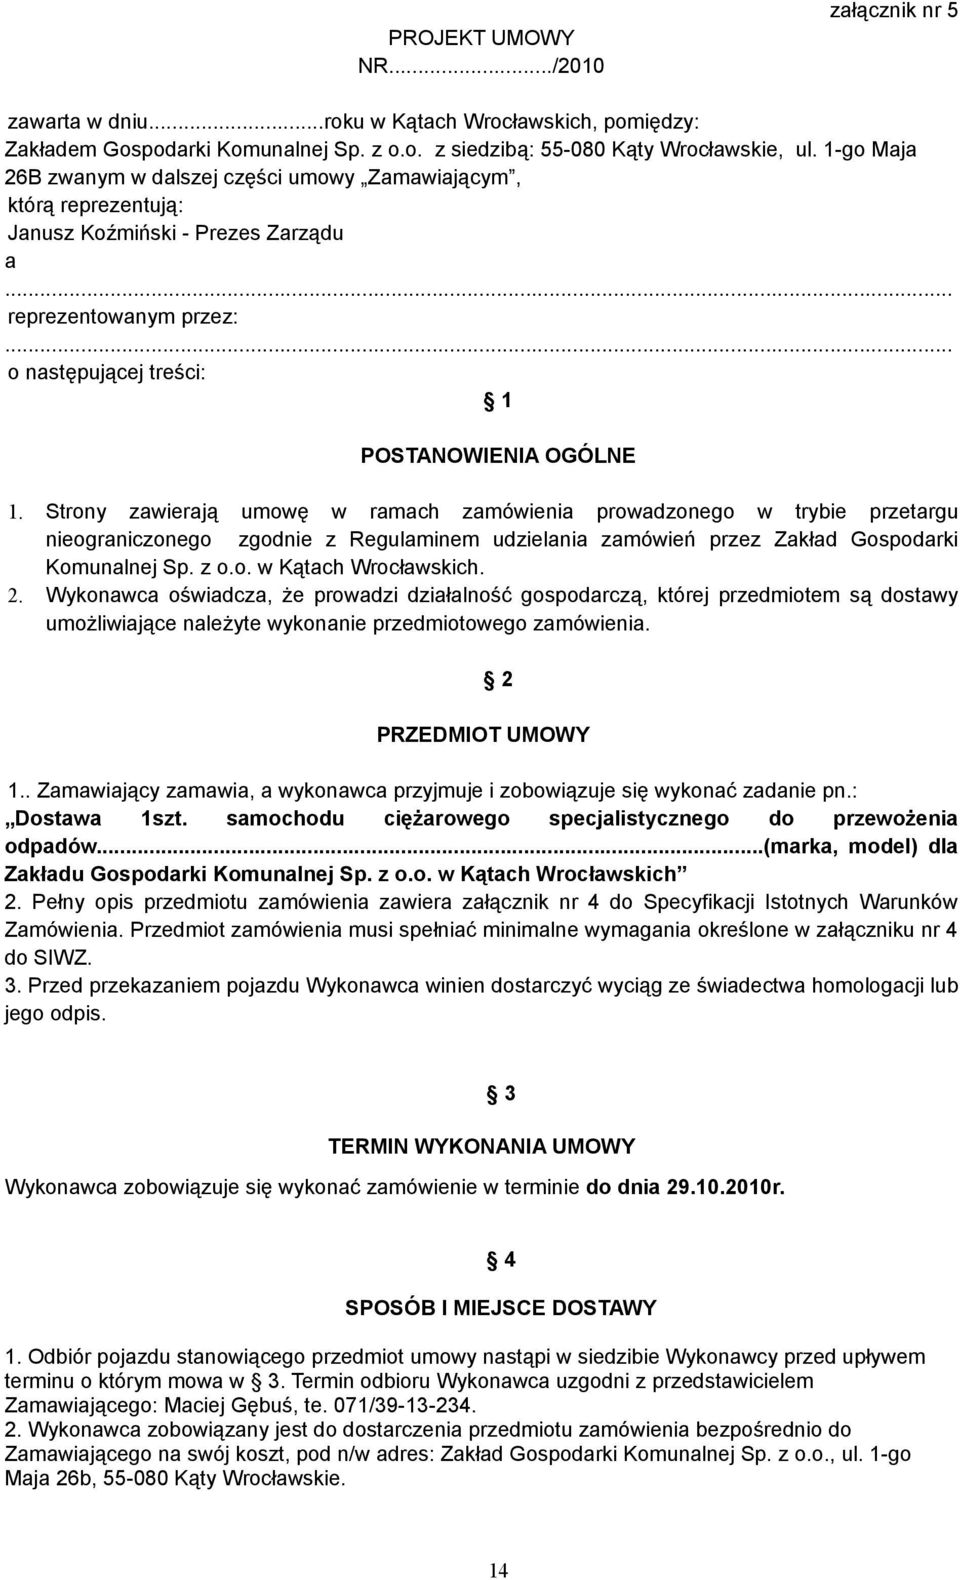 Strony zawierają umowę w ramach zamówienia prowadzonego w trybie przetargu nieograniczonego zgodnie z Regulaminem udzielania zamówień przez Zakład Gospodarki Komunalnej Sp. z o.o. w Kątach Wrocławskich.